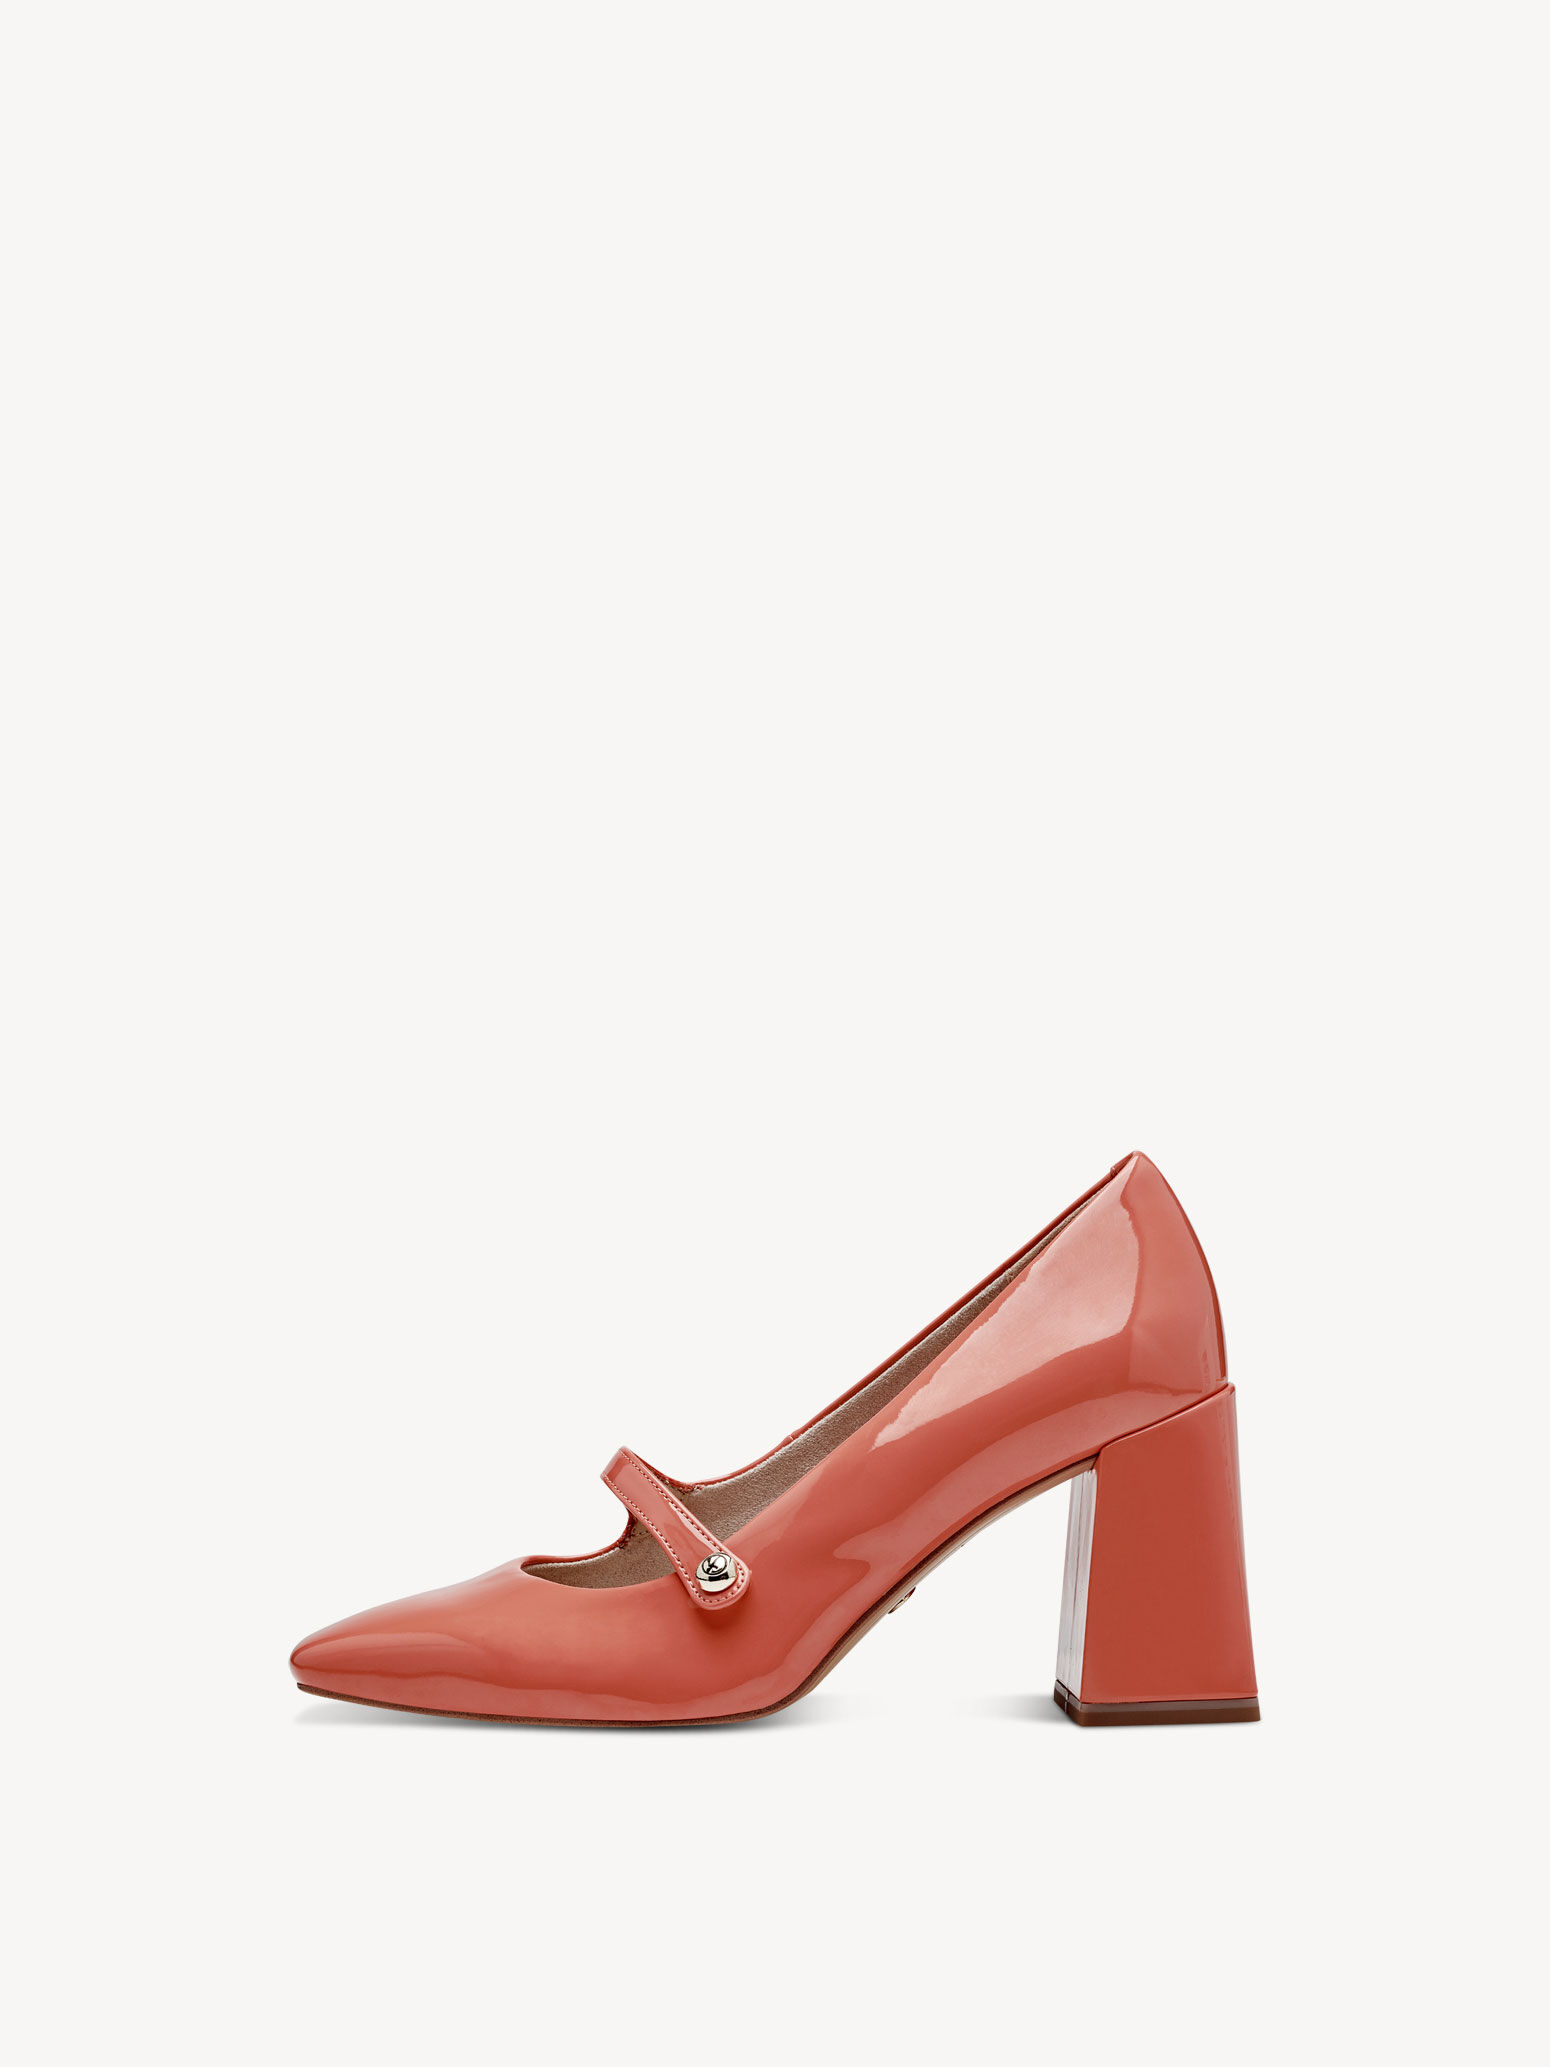 Pumps - orange 1-22437-42-606: Buy Tamaris High heels online!